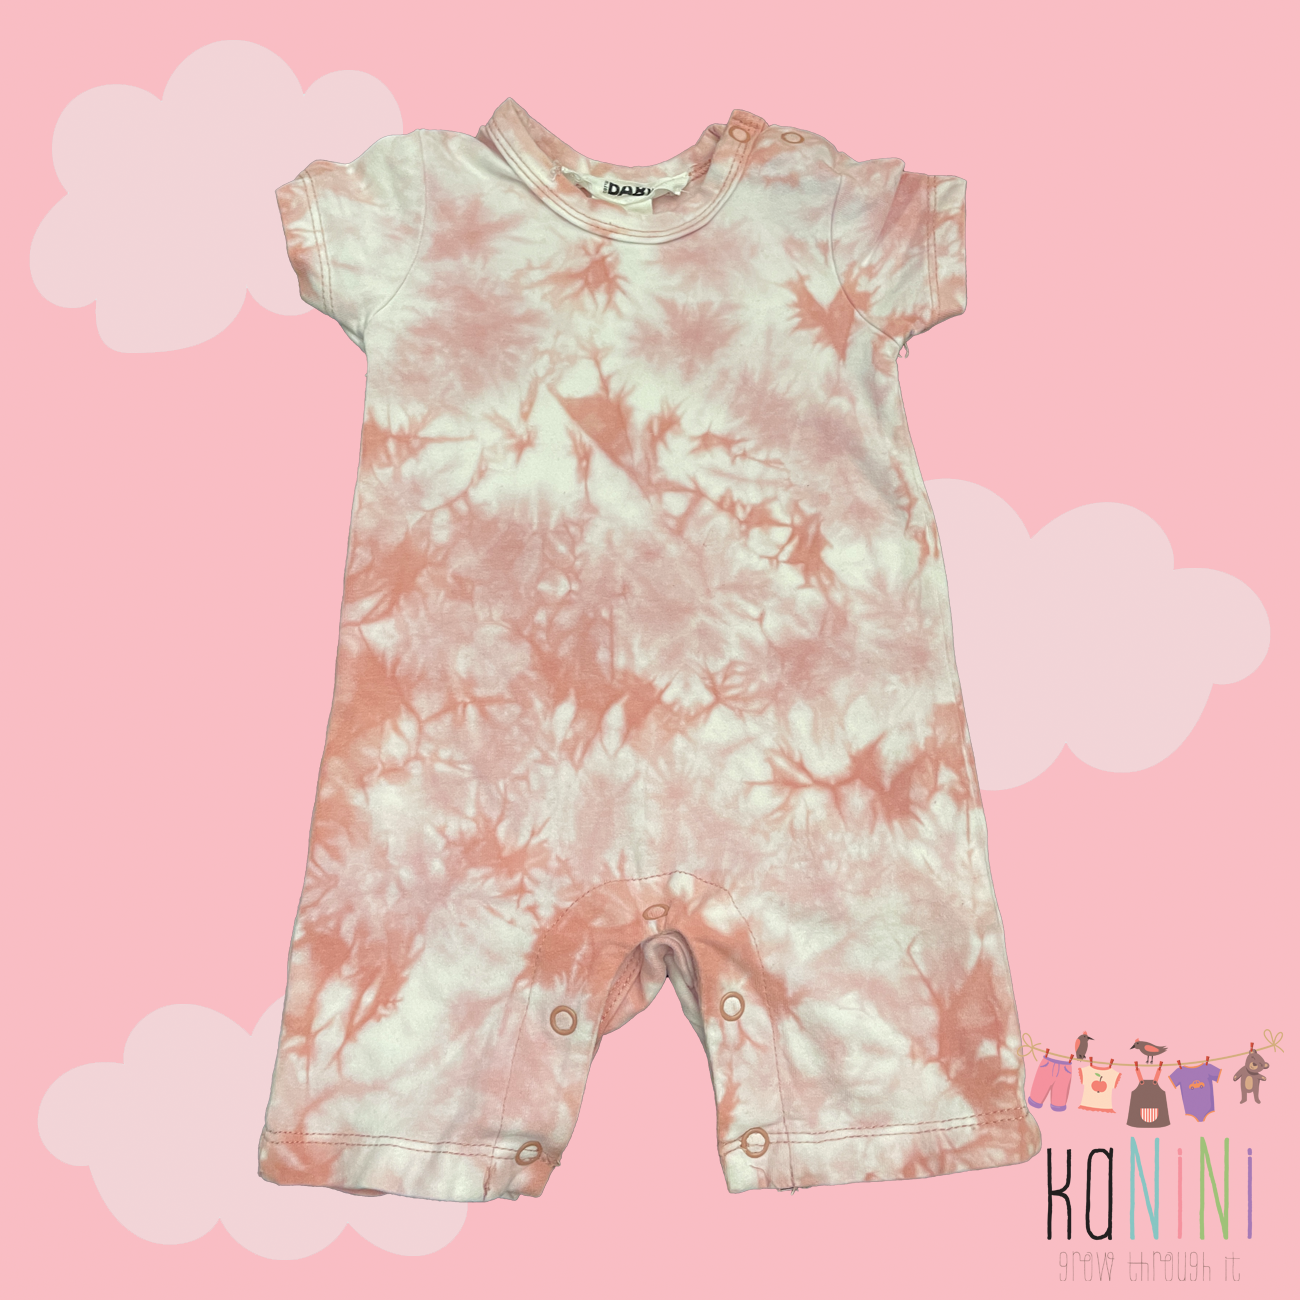 Featured image for “Cotton On Newborn Girls Pink Tie Dye Onesie”